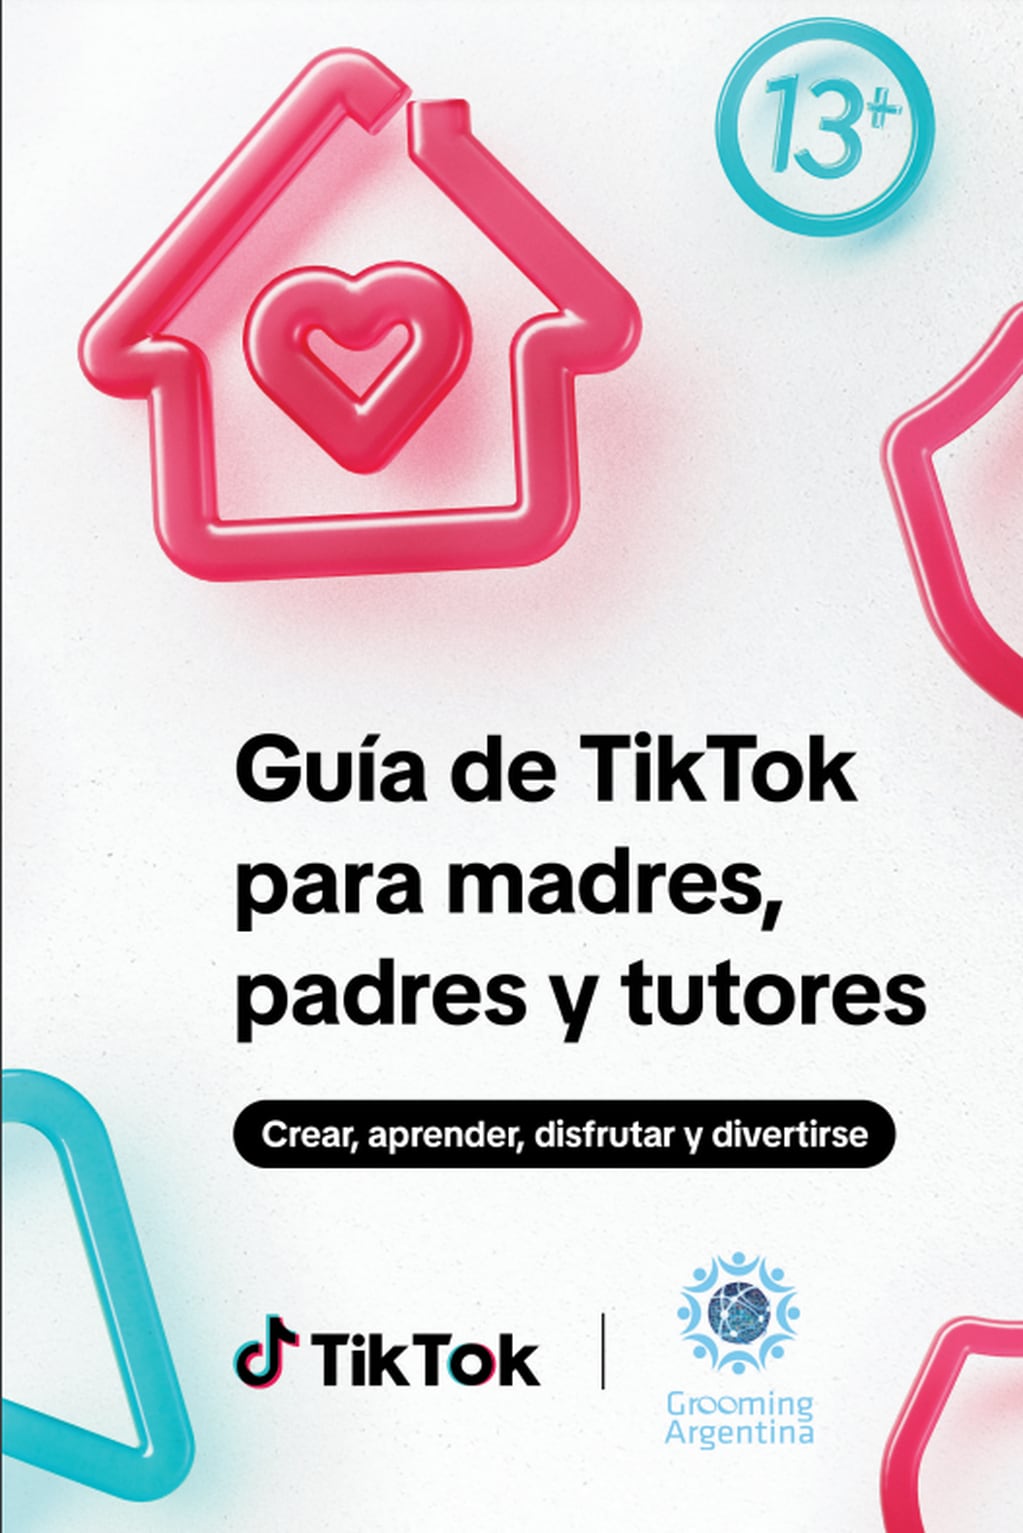 La guía definitiva: Cómo prevenir, evitar y estar alertas a peligros y abusadores de niños en TikTok. Foto: Grooming Argentina